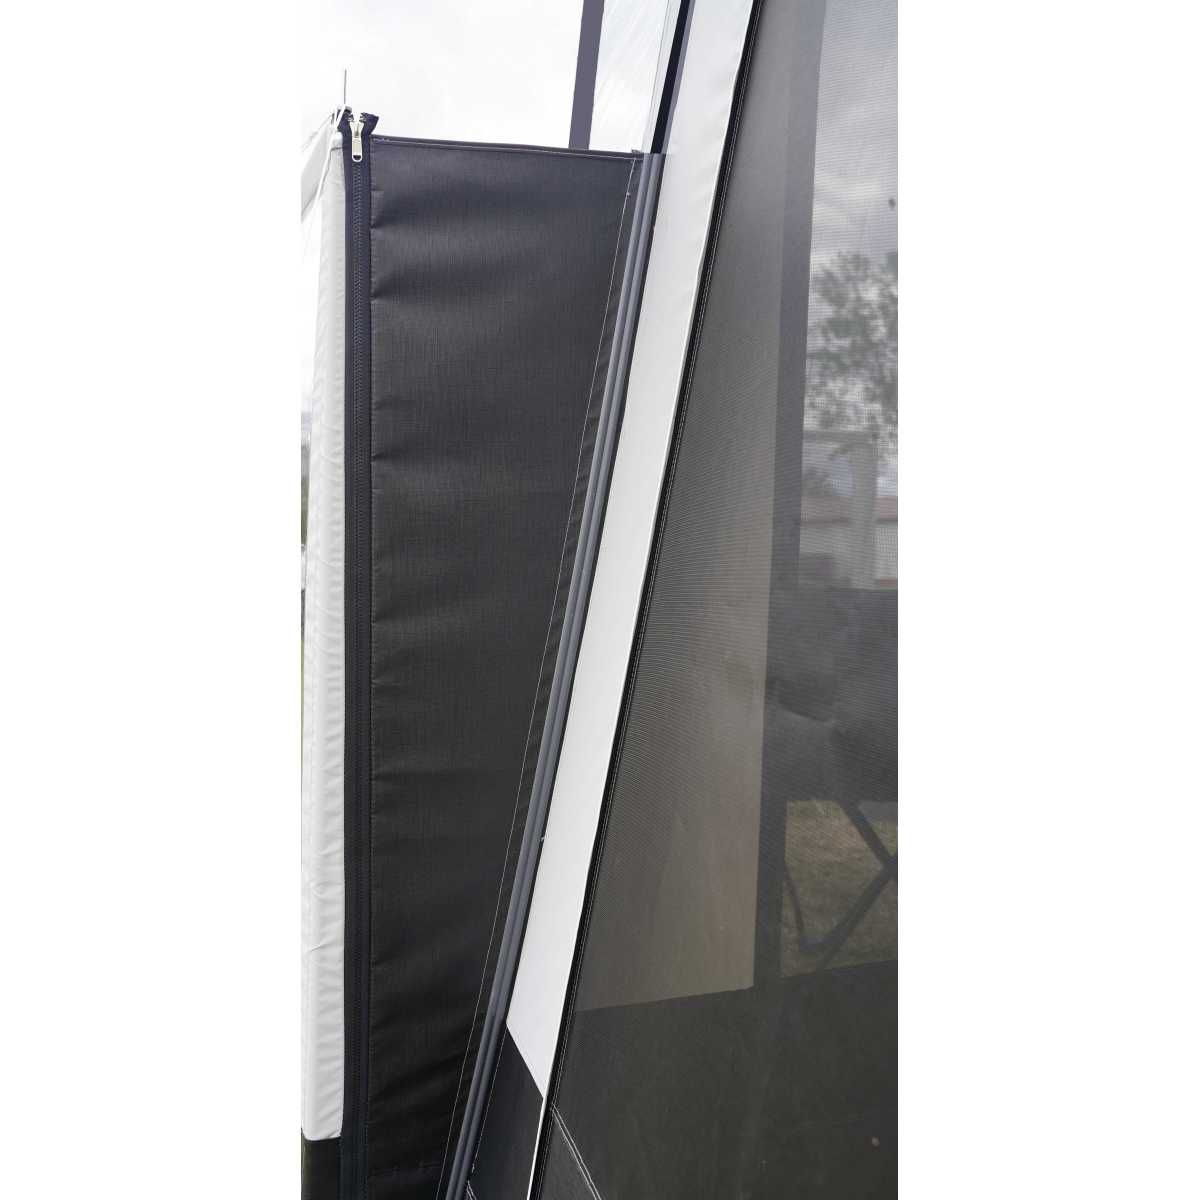 WIGO Sichtschutz ROLLI PROTECT Modul 4 -senkrecht- Gr. 140 x 125 cm - 7120